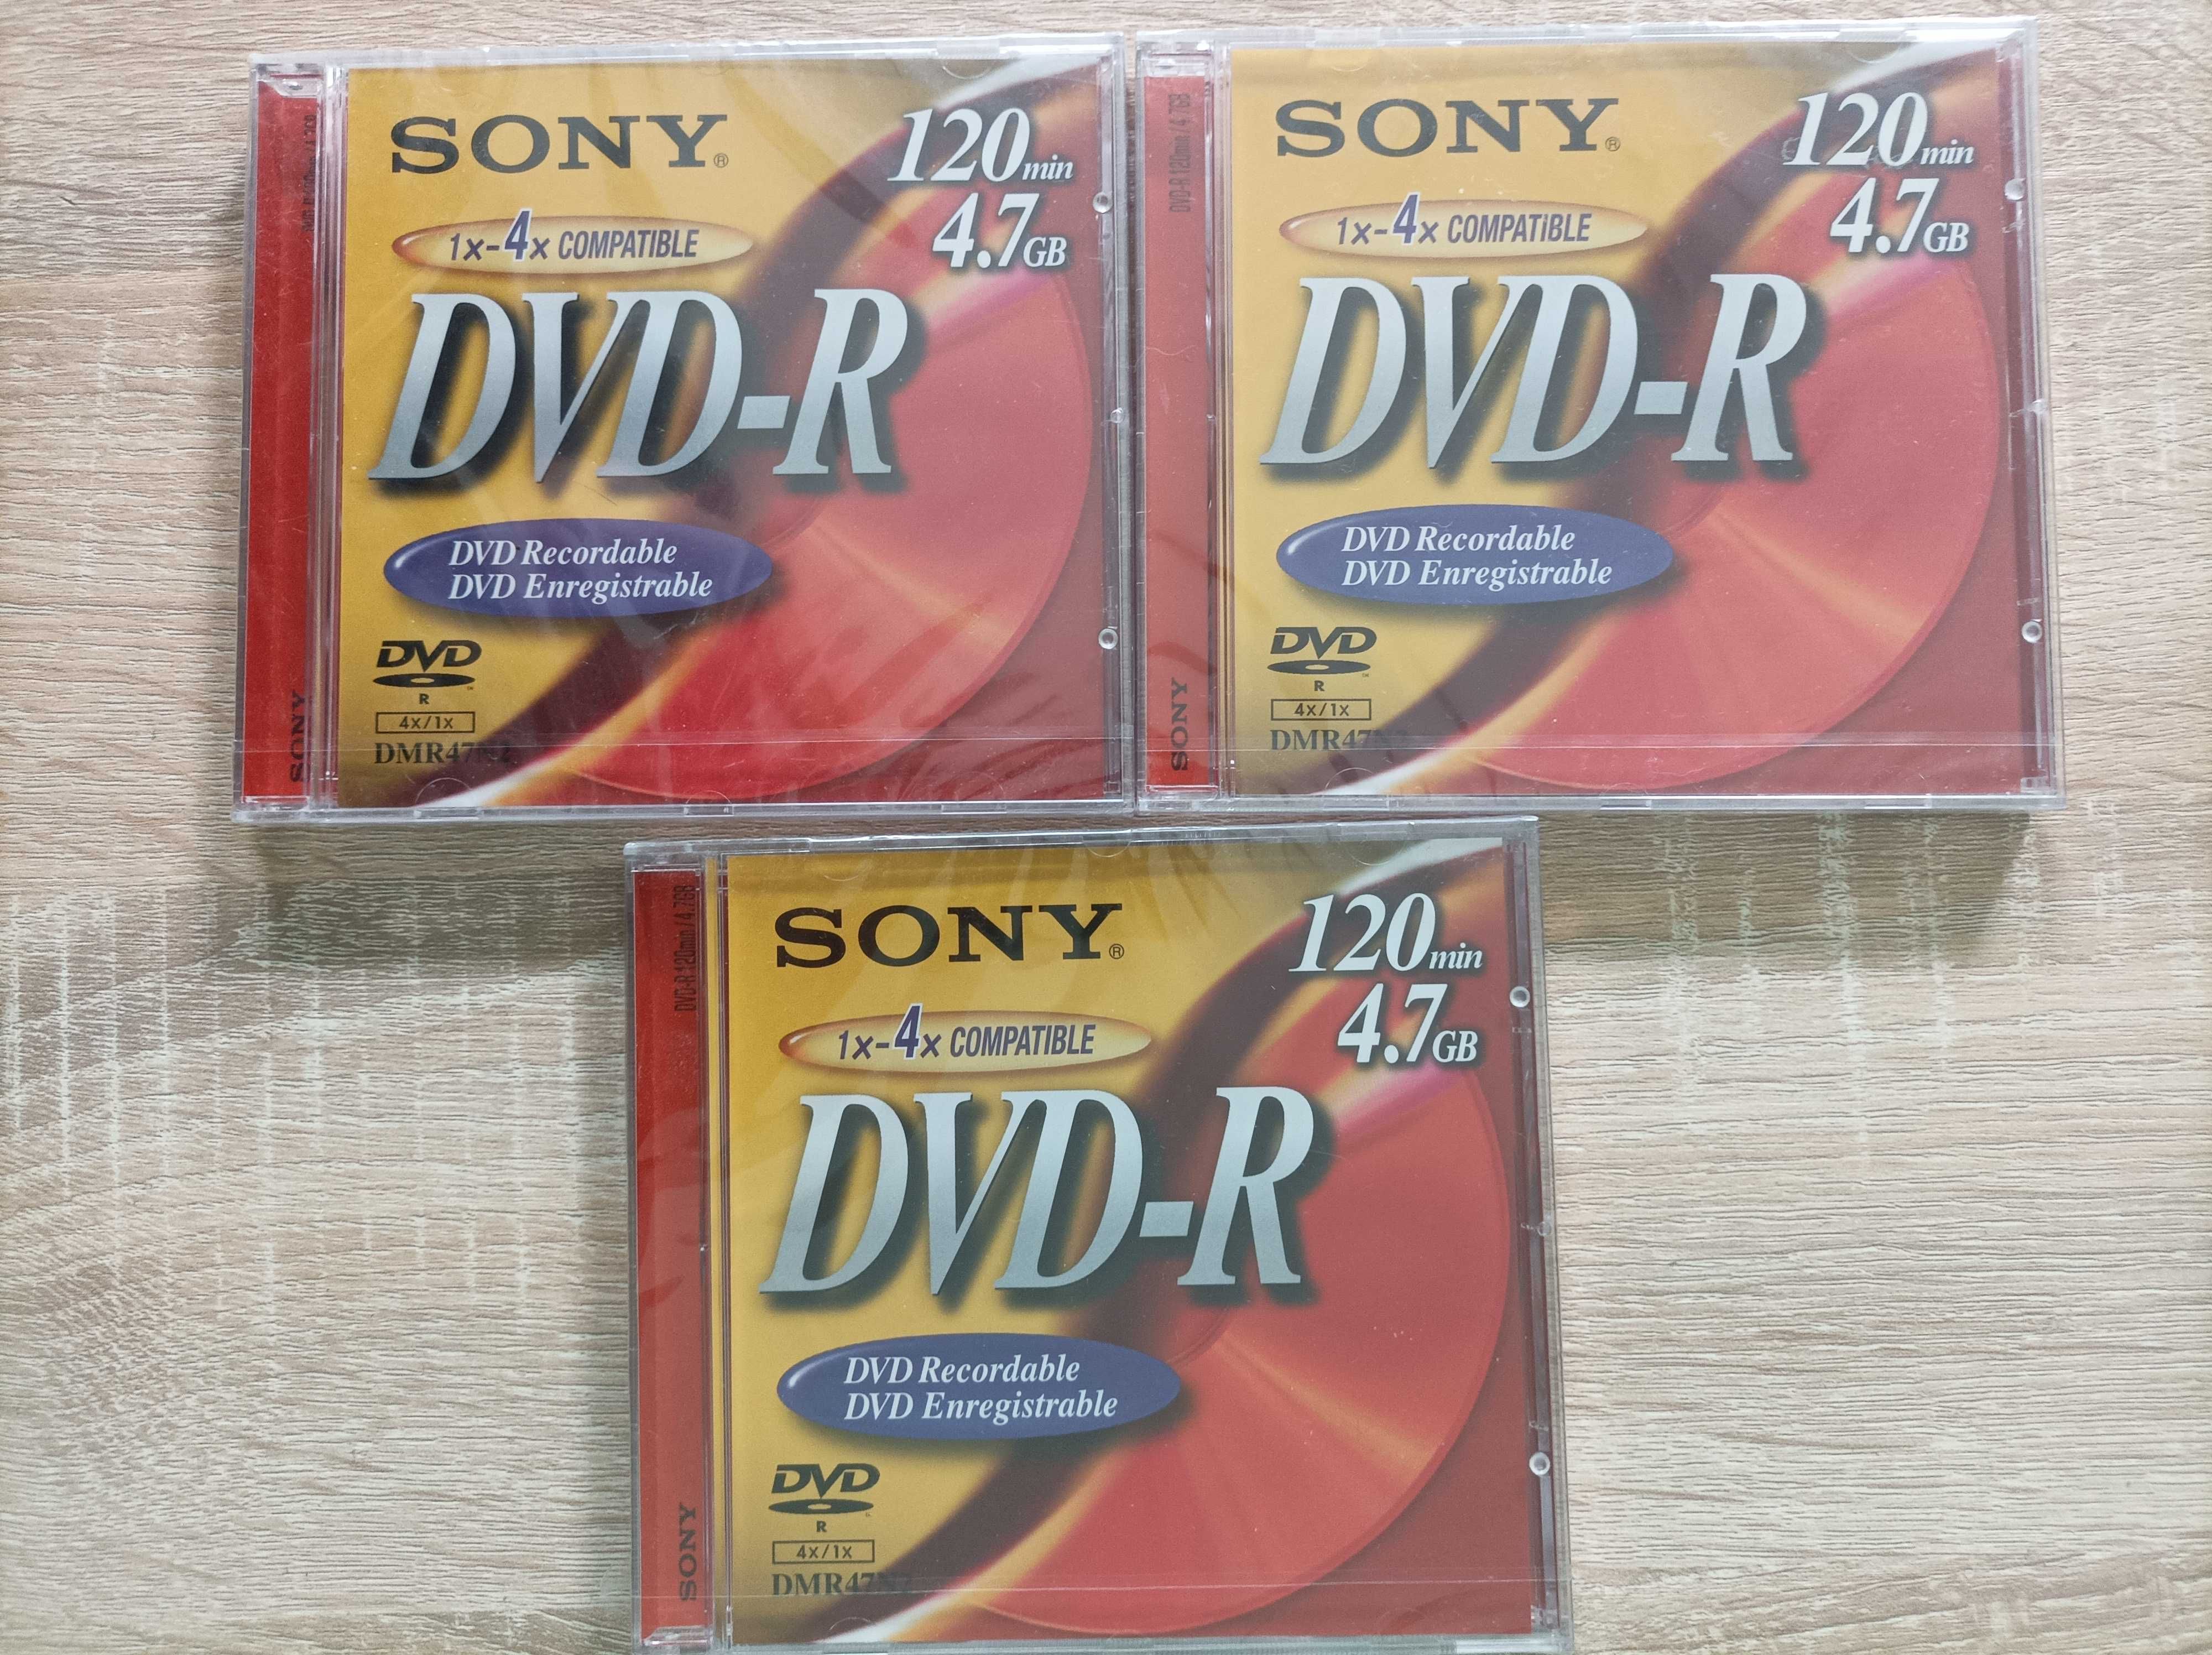 Płyty Sony DVD - R